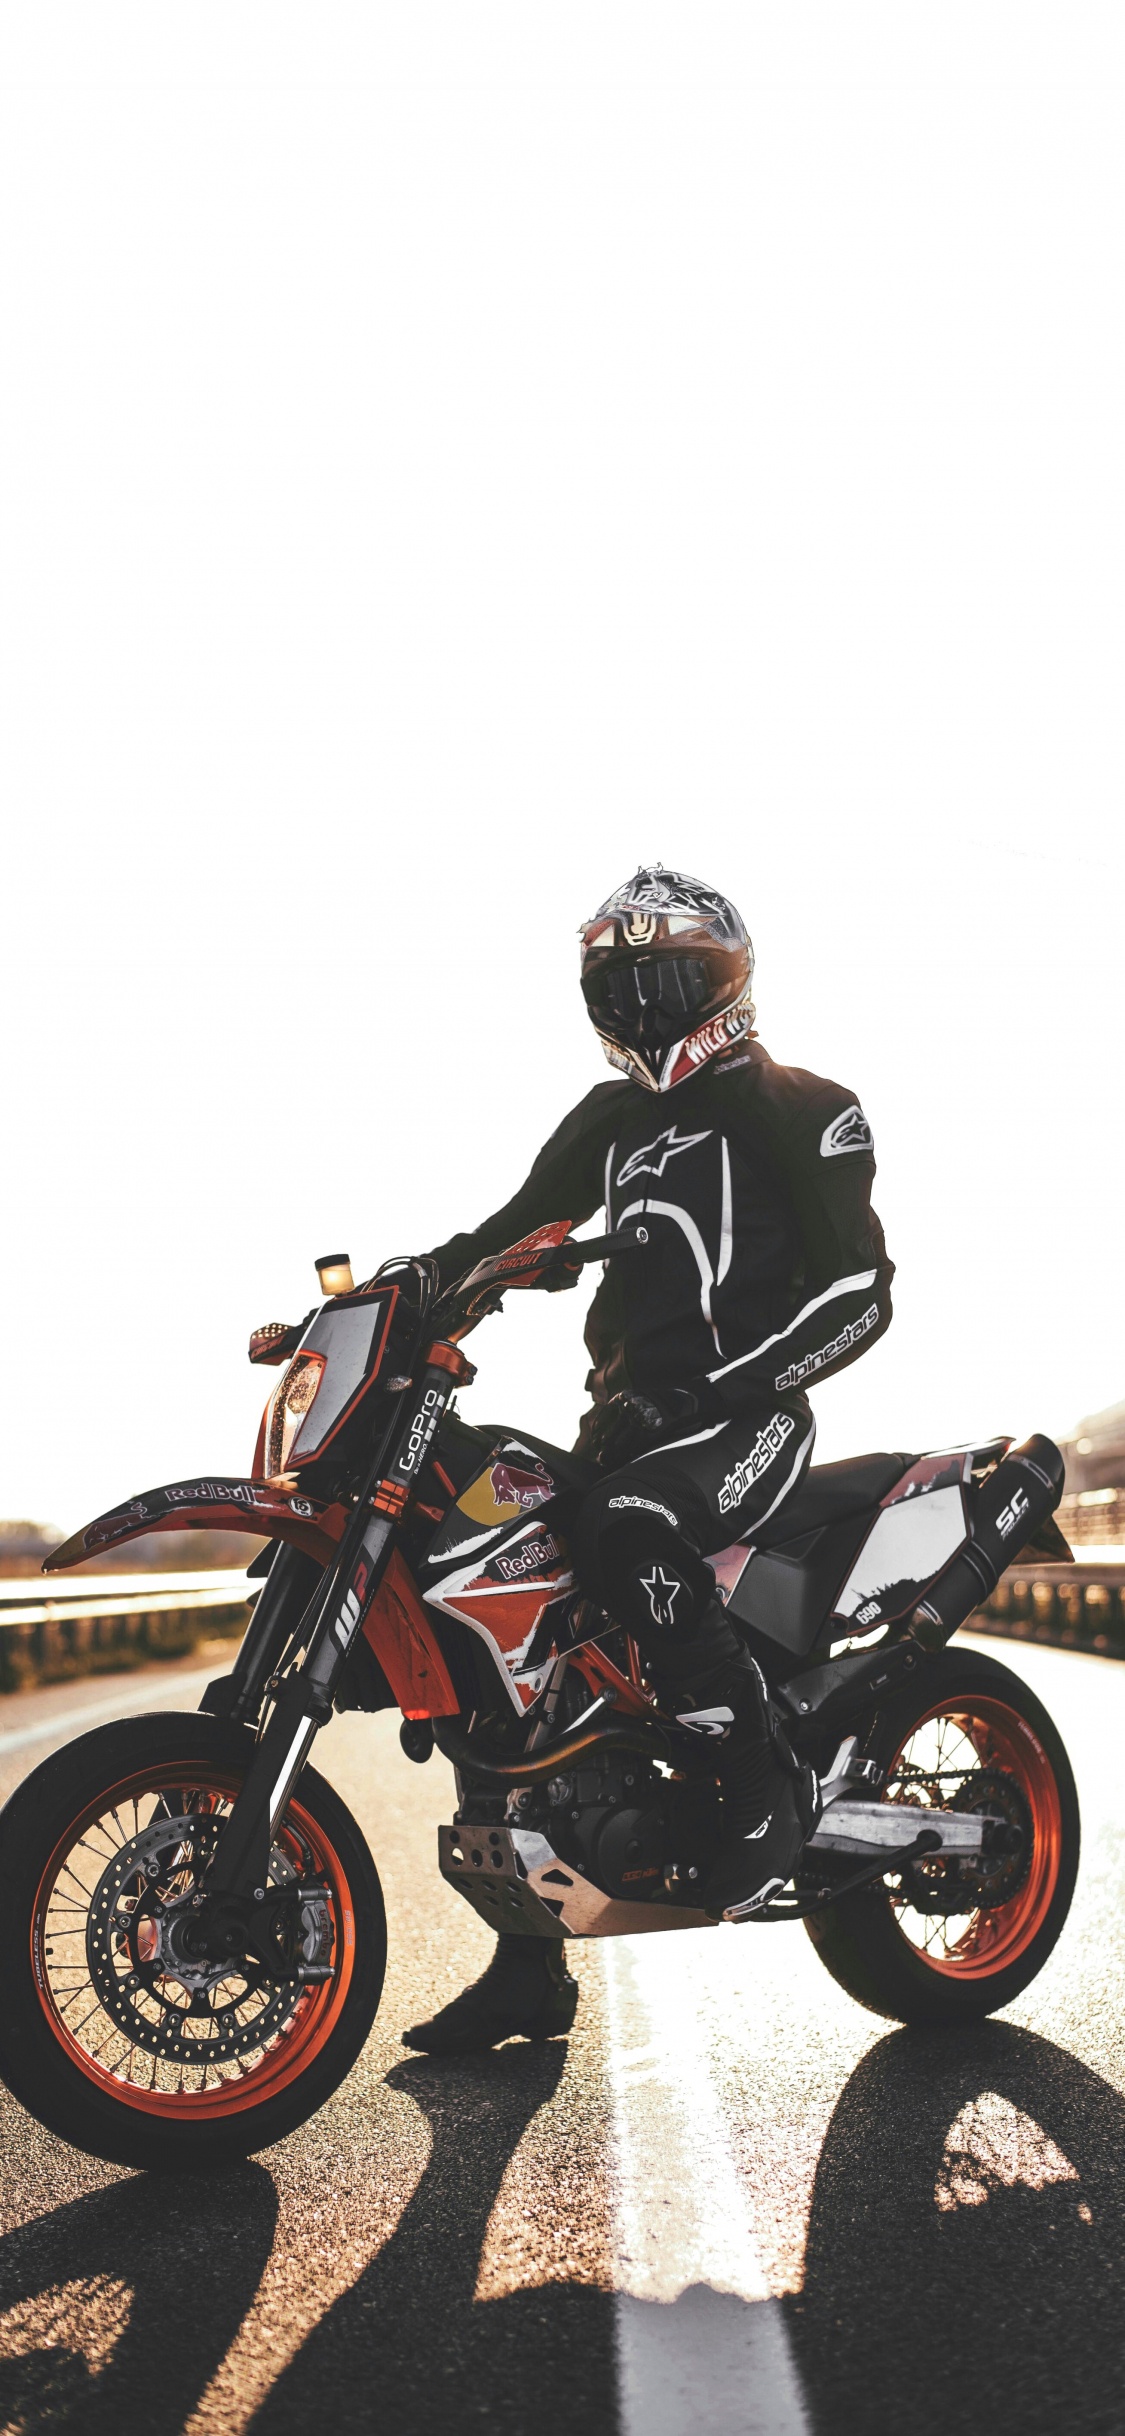 Hombre de Chaqueta Negra Montando Motocicleta. Wallpaper in 1125x2436 Resolution